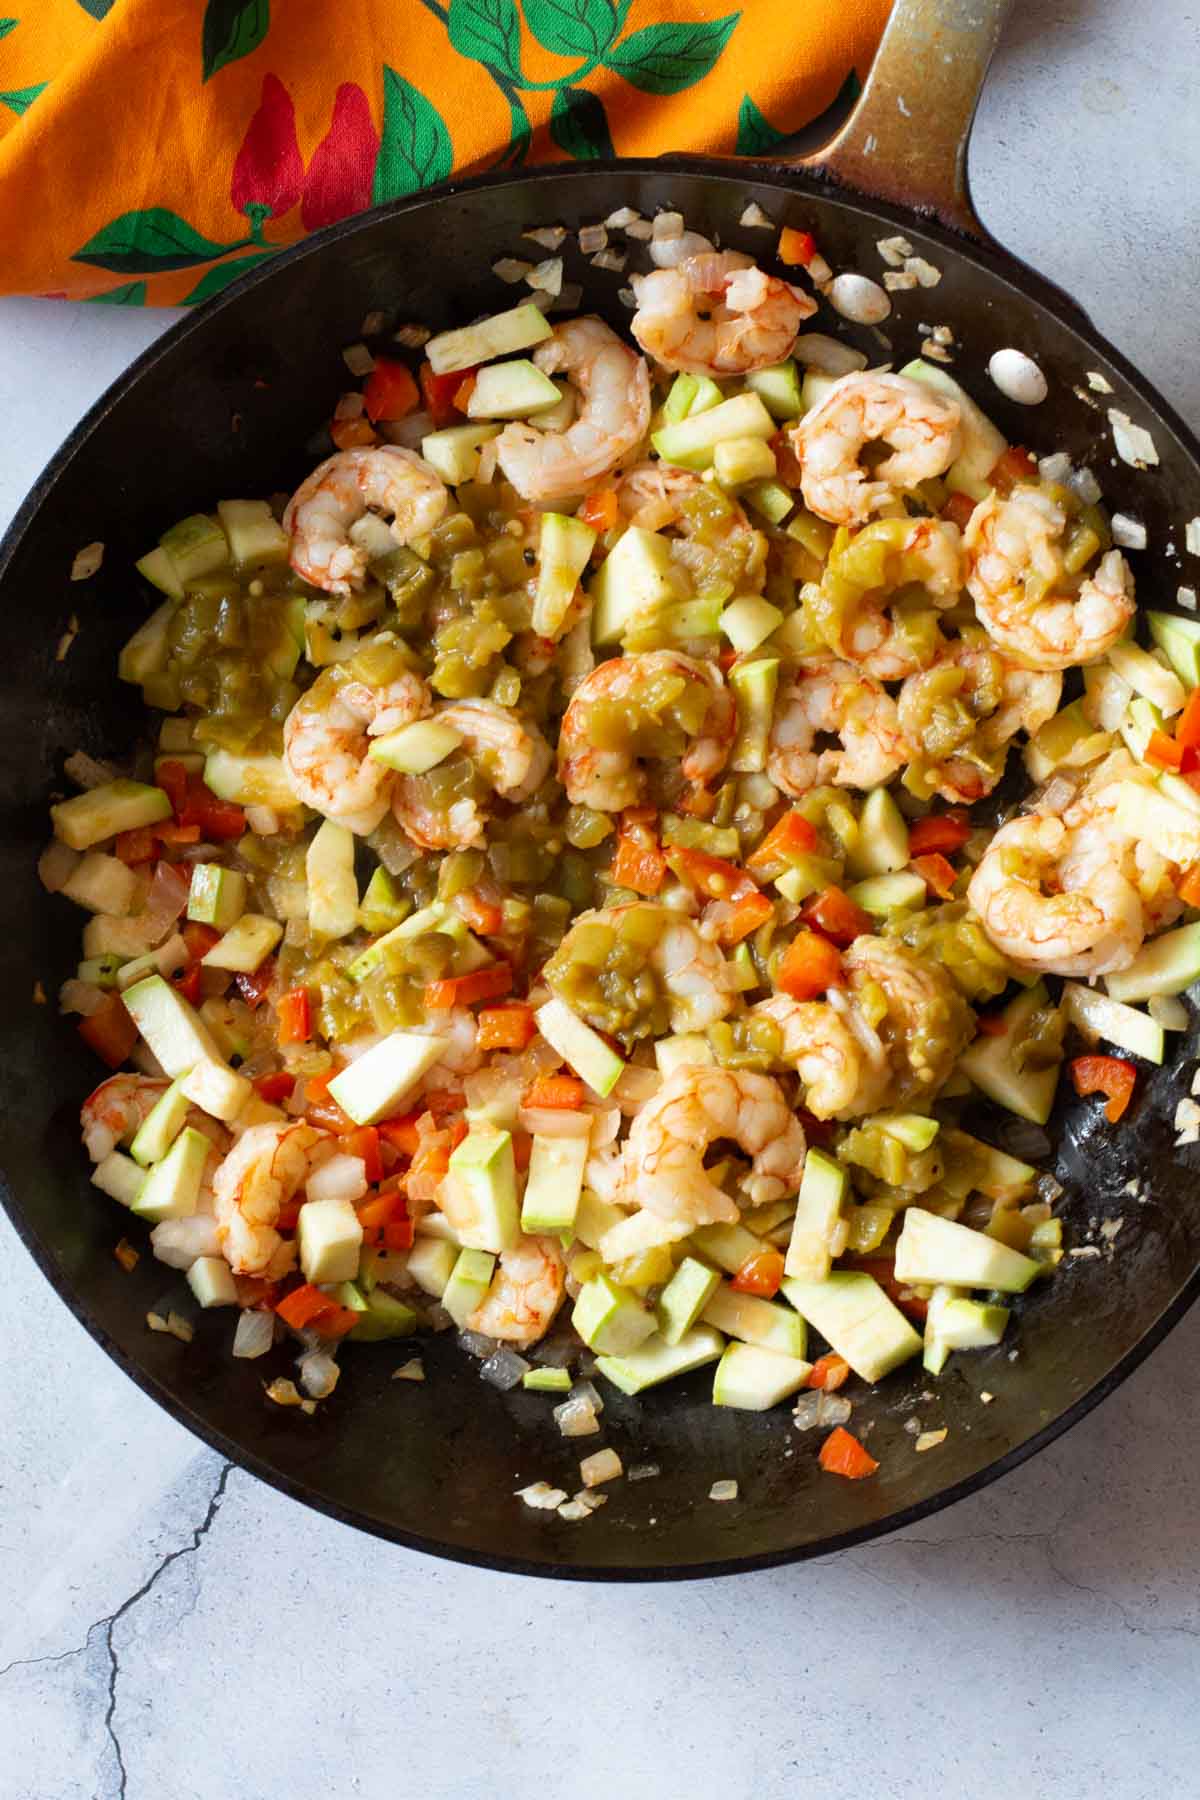 Adding vegetables to make shrimp burritos.